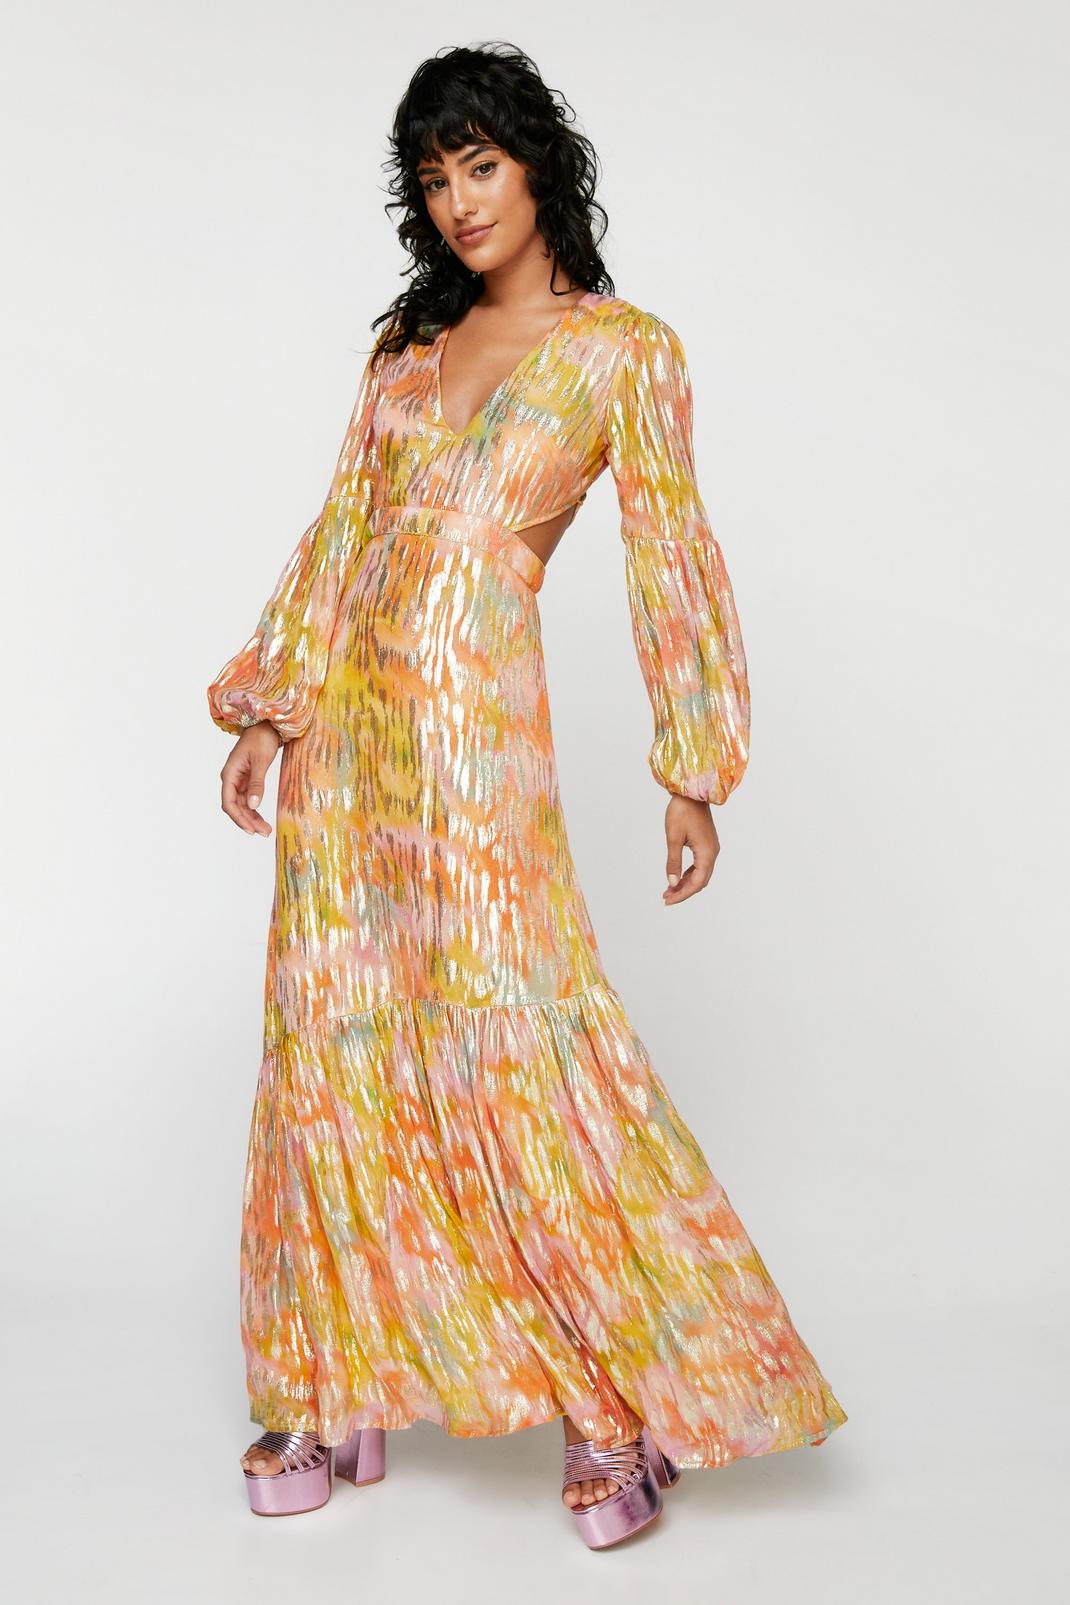 Vintage Evening Dresses, Vintage Formal Dresses Metallic Blurred Floral Open Back Maxi Dress  AT vintagedancer.com